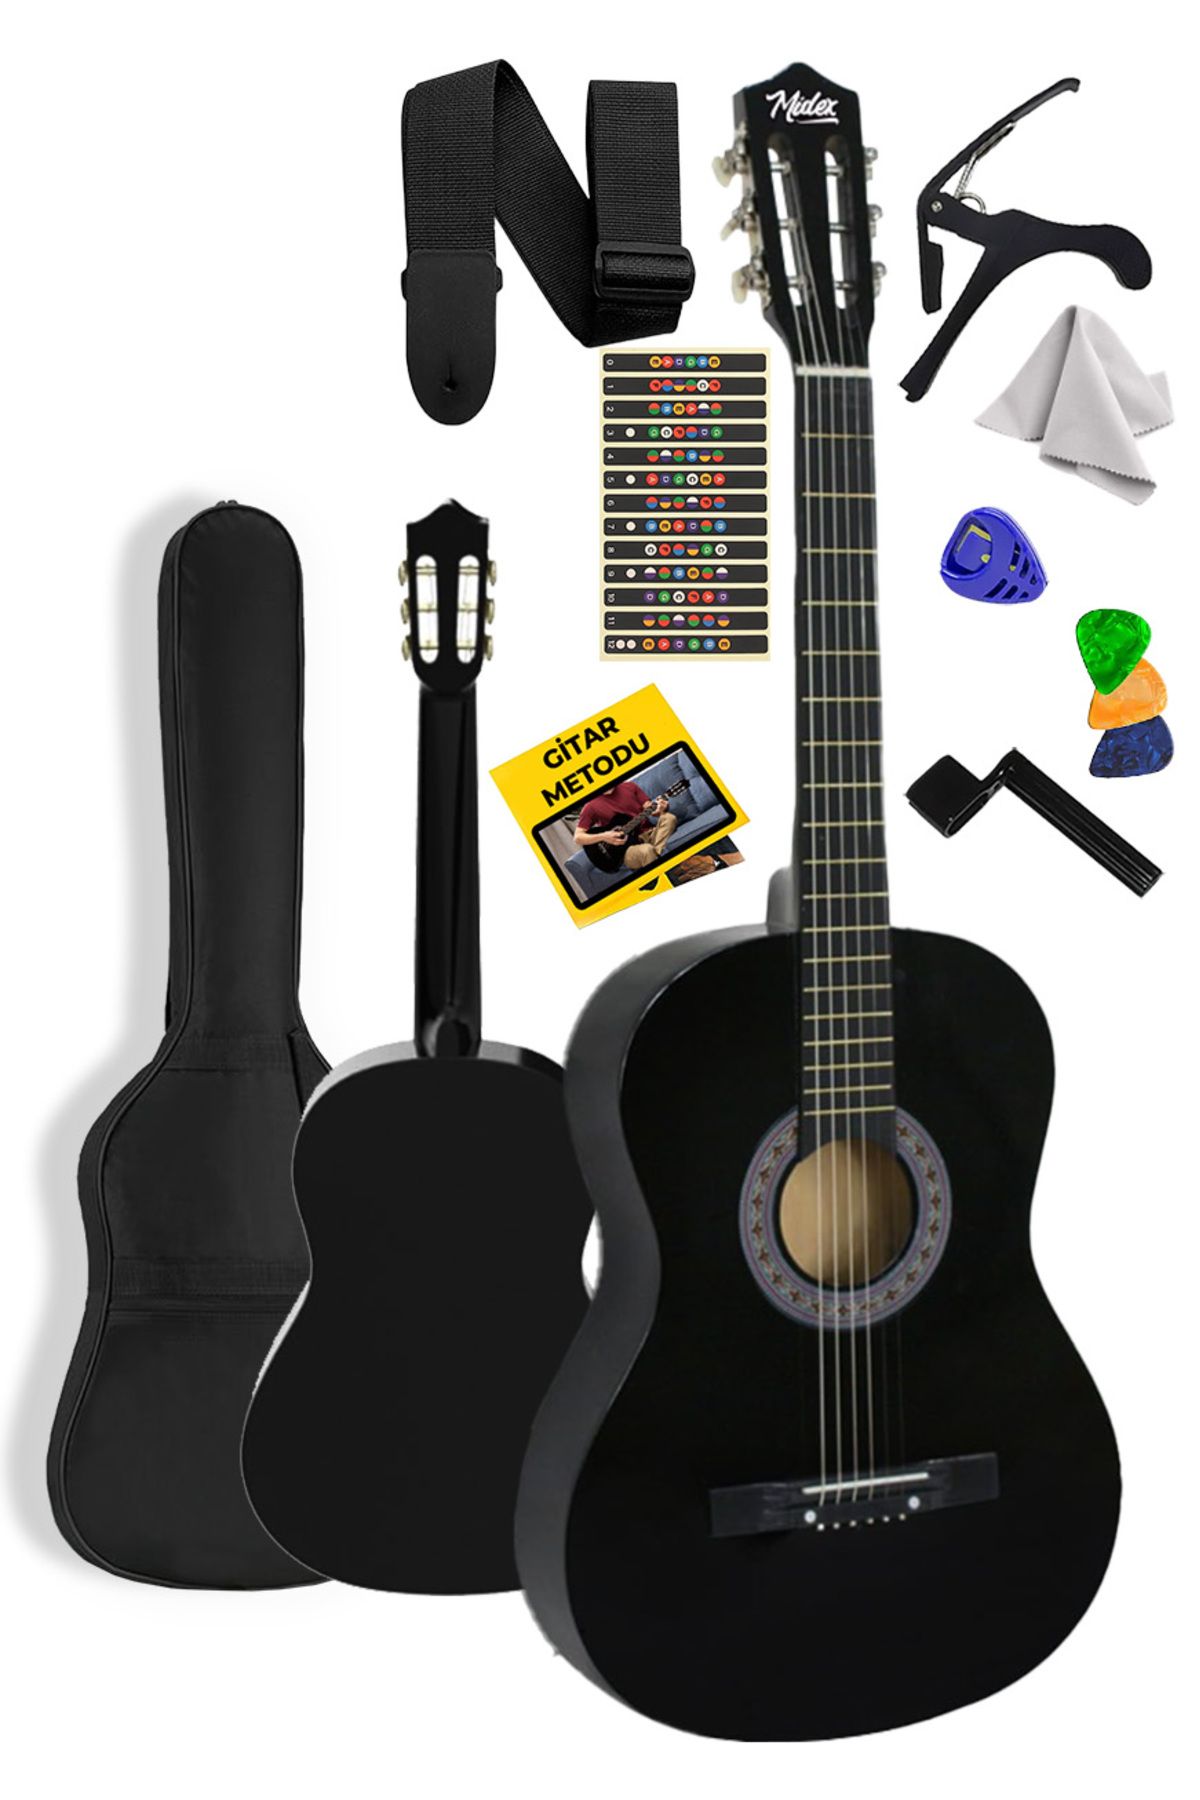 Midex Cg-36bk Kaliteli 36 Inç 3/4 Junior Çocuk Gitarı 8-12 Yaş Arası (ÇANTA ASKI PENA METOD)